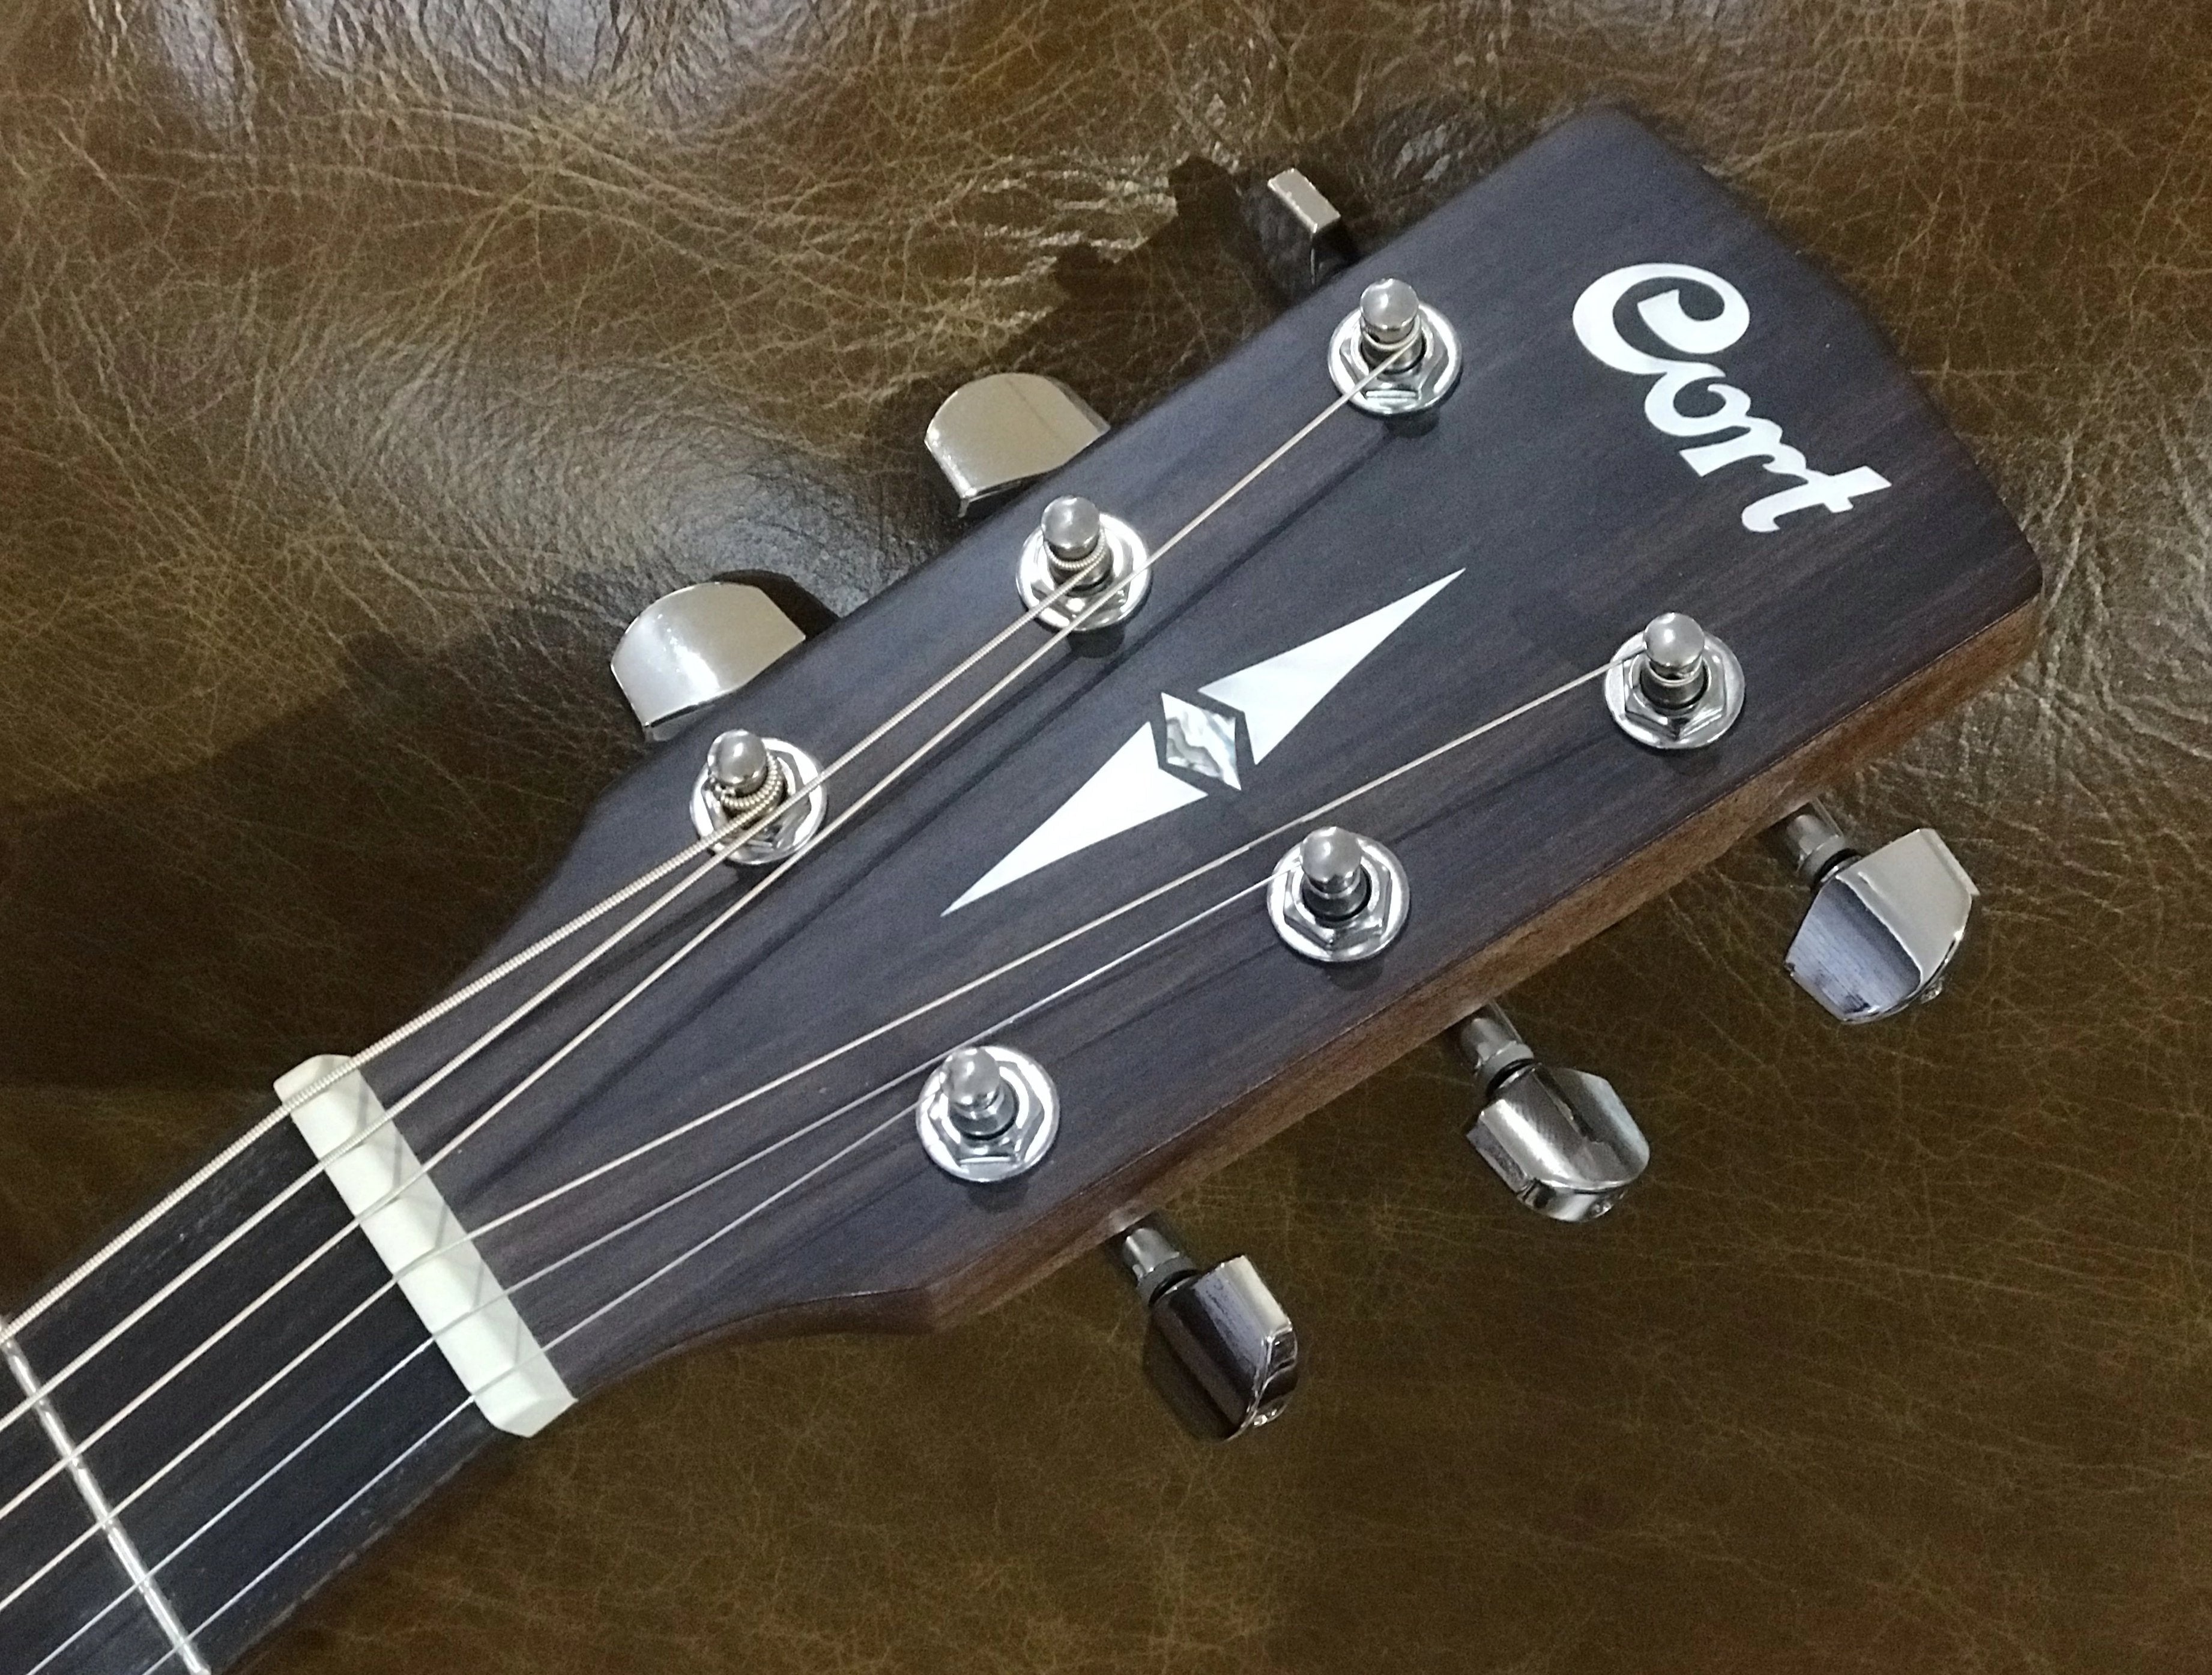 Cort Luce Acoustic Bevel Cut Open Pore, Acoustic Guitar for sale at Richards Guitars.